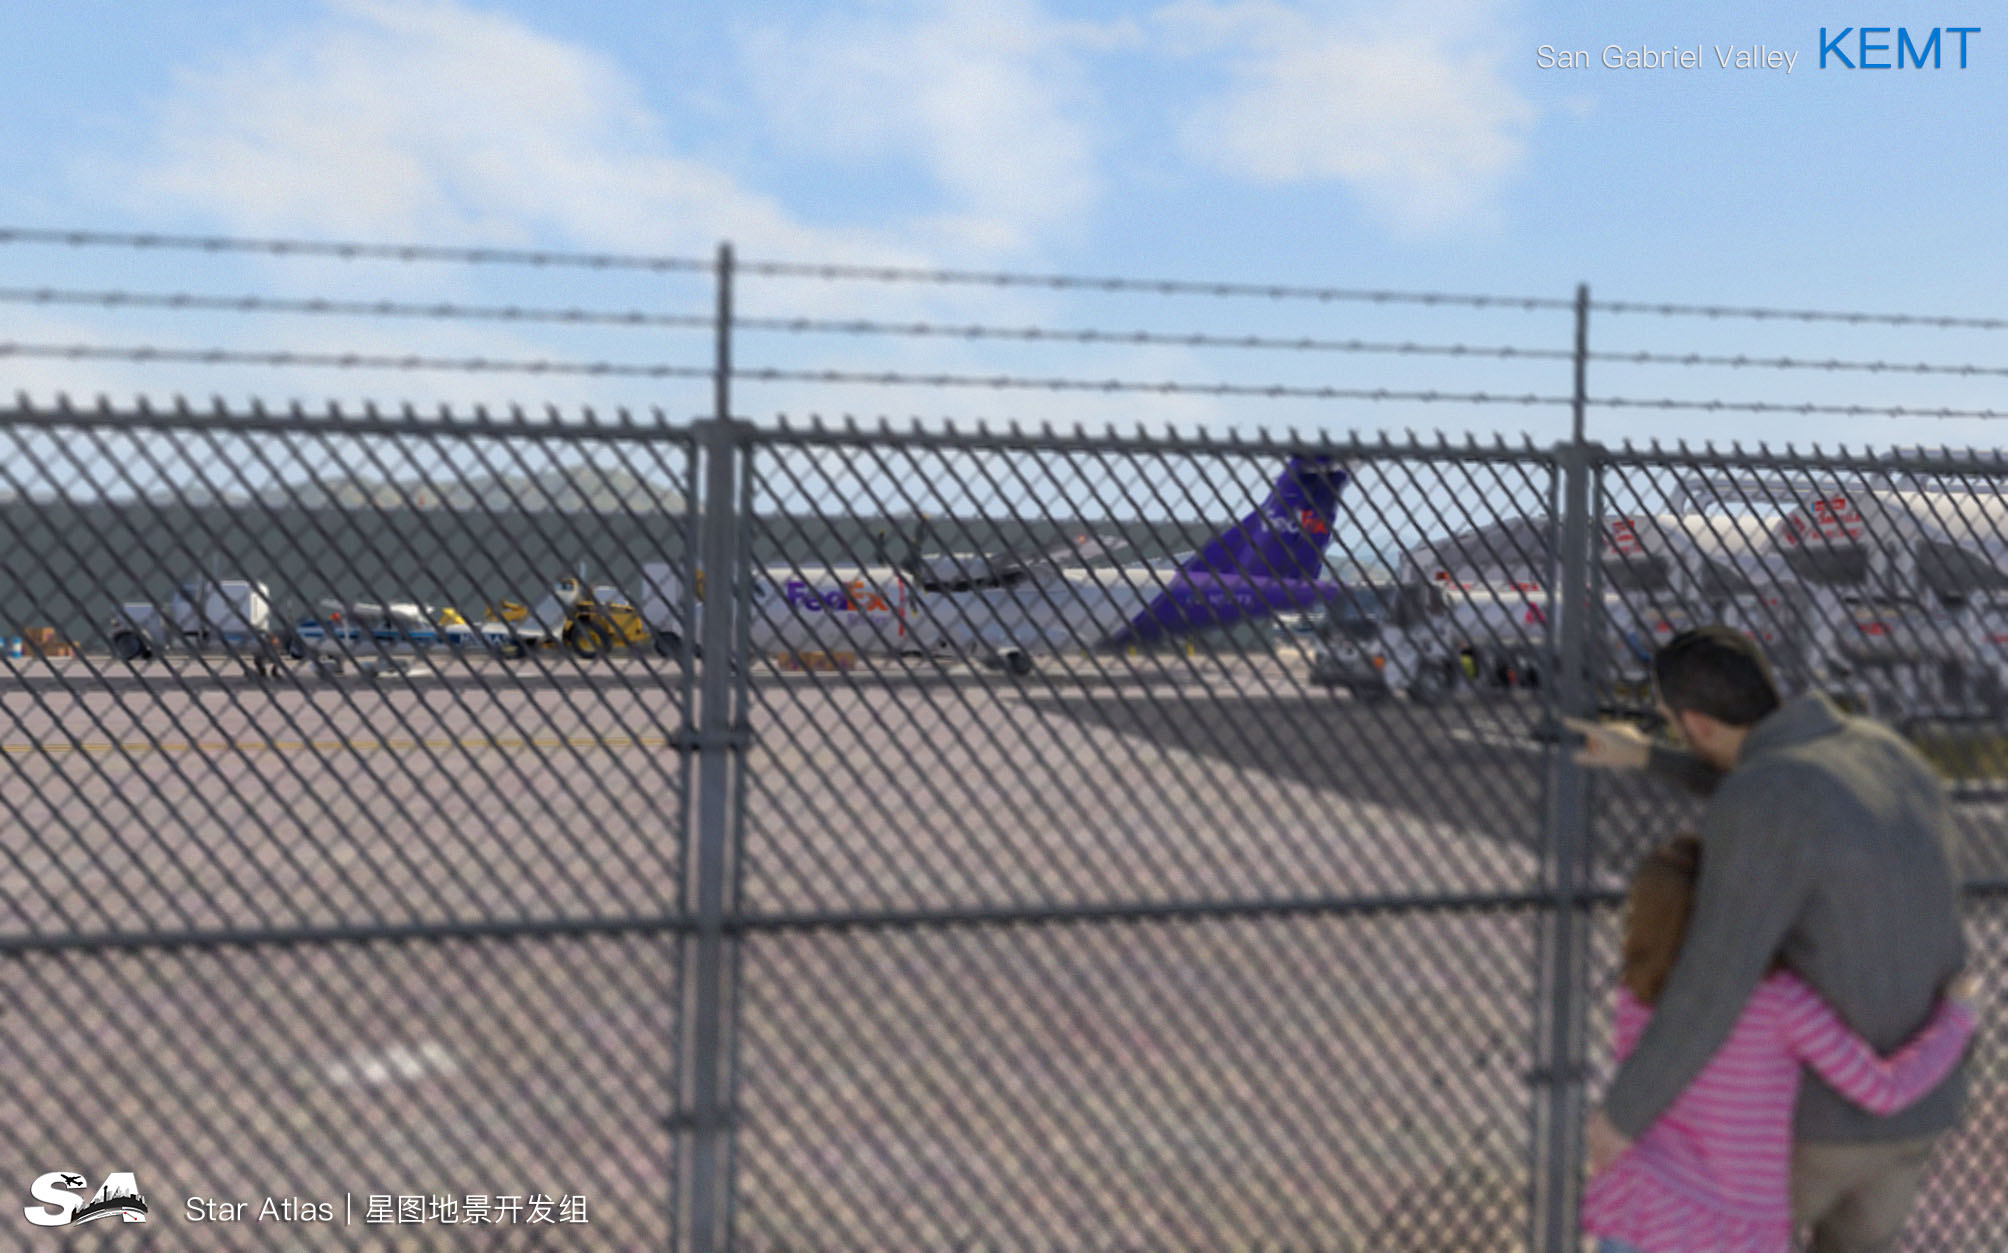 【X-Plane】KEMT-圣盖博谷机场 HD 1.0-6550 